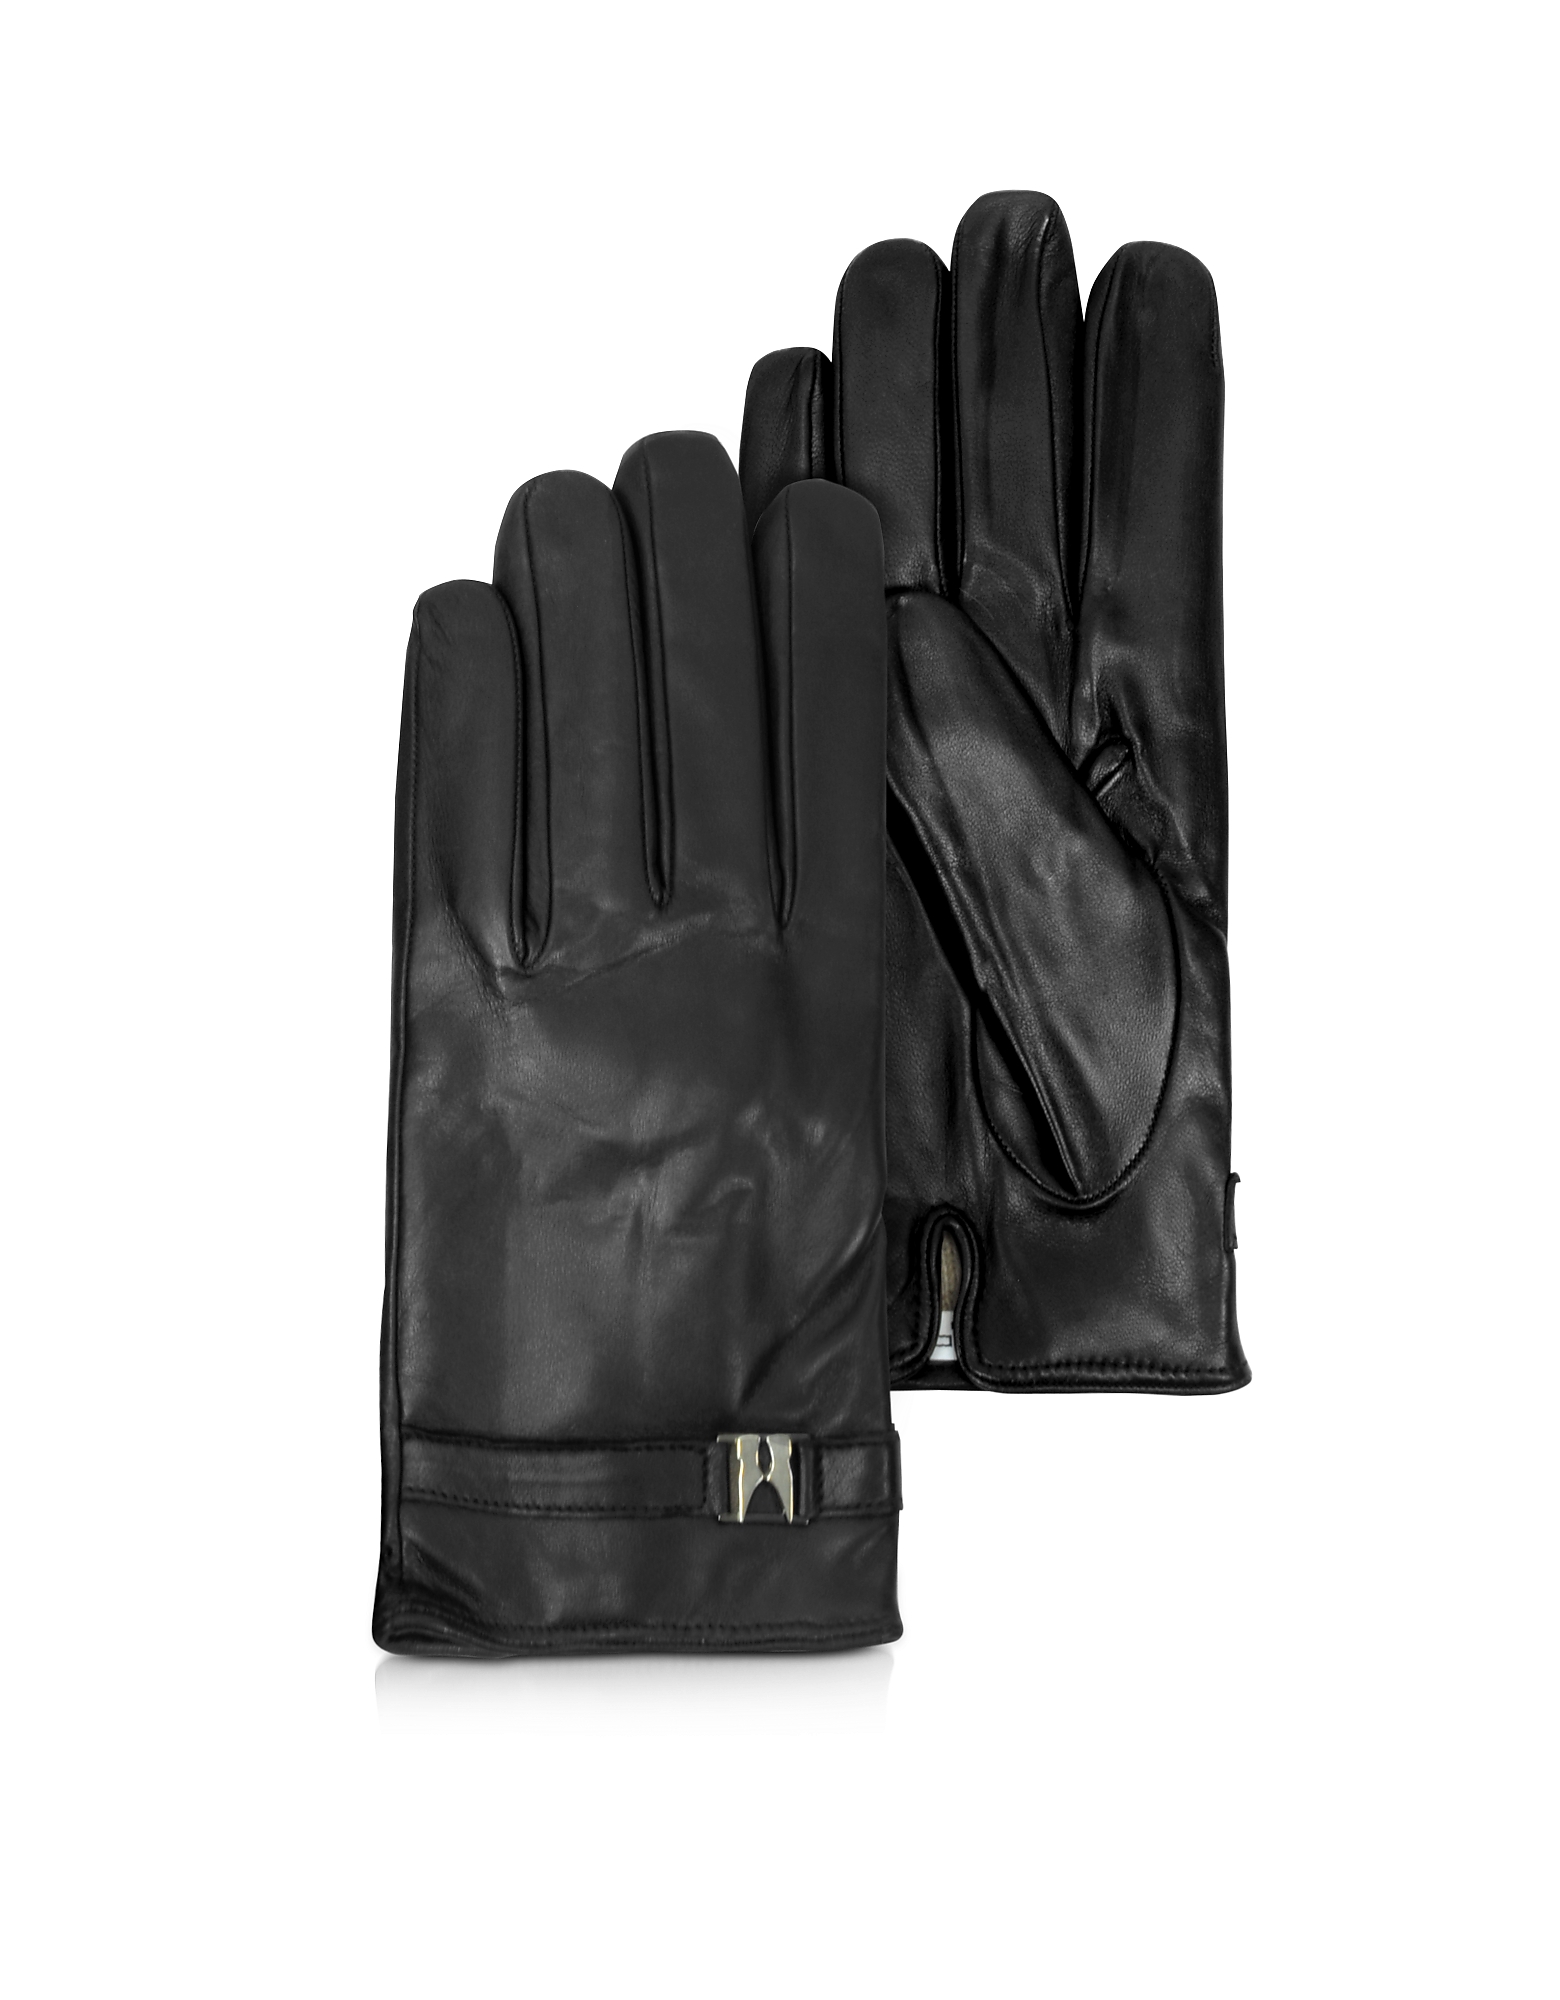 Moreschi Alaska Black Leather Men's Gloves w/Cashmere Lining